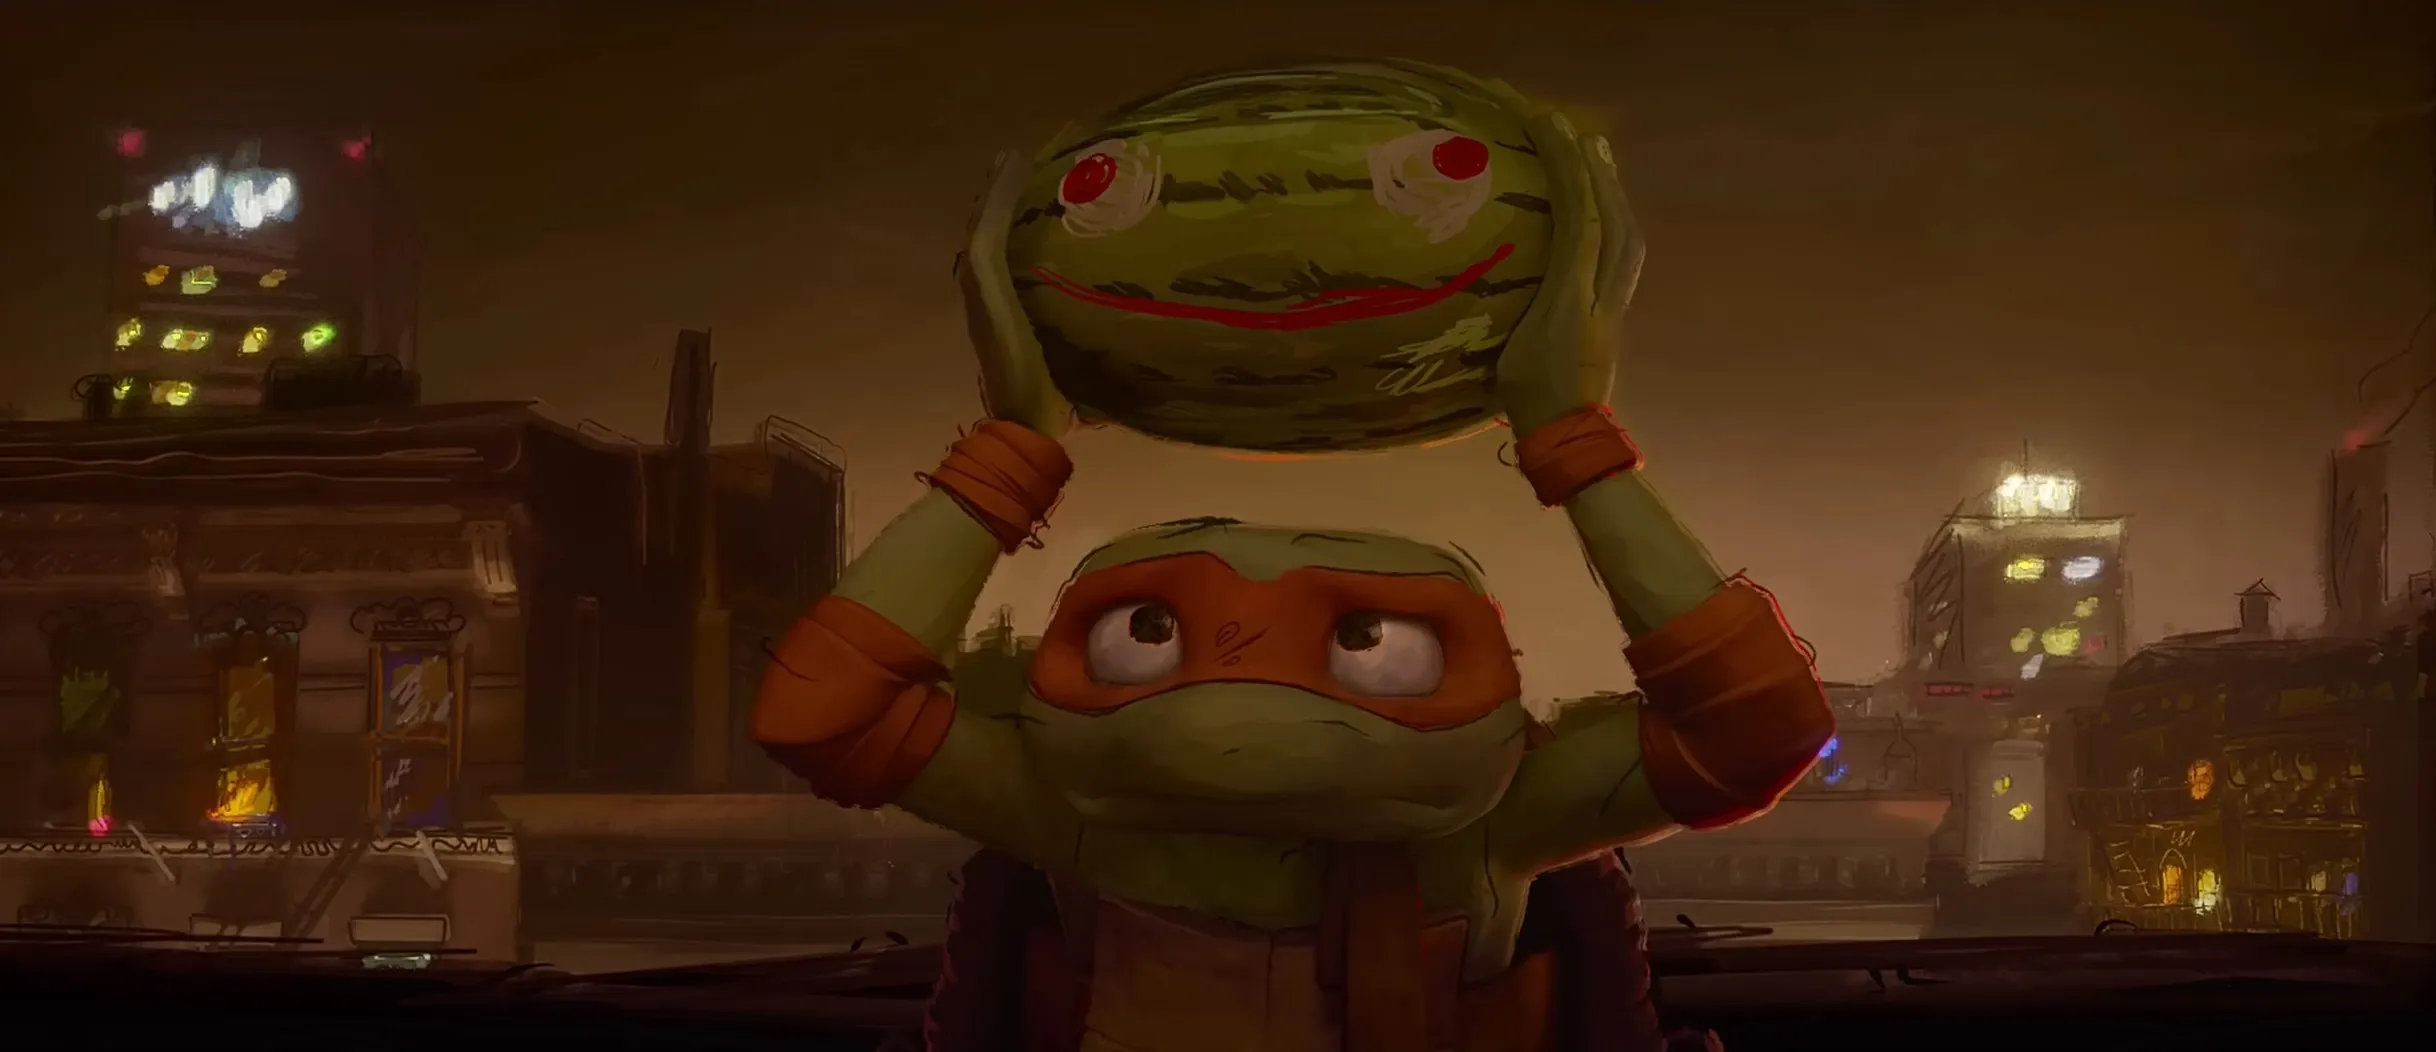 Teenage Mutant Ninja Turtle watermelon scene screenshot